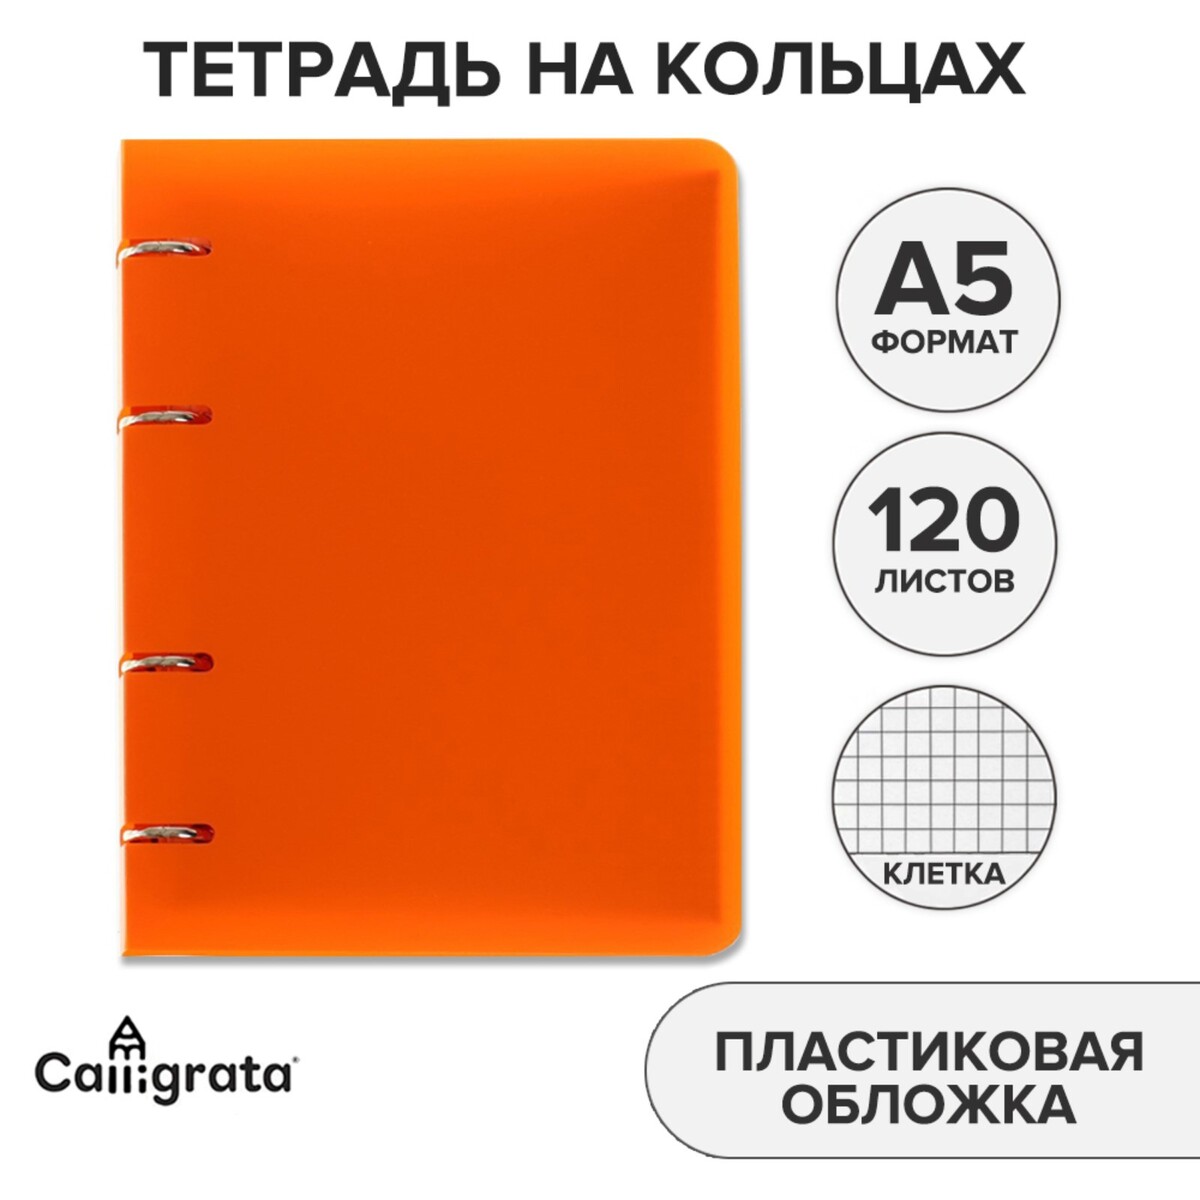 Тетрадь на кольцах a5 120 листов в клетку calligrata оранжевая, пластиковая обложка, блок офсет